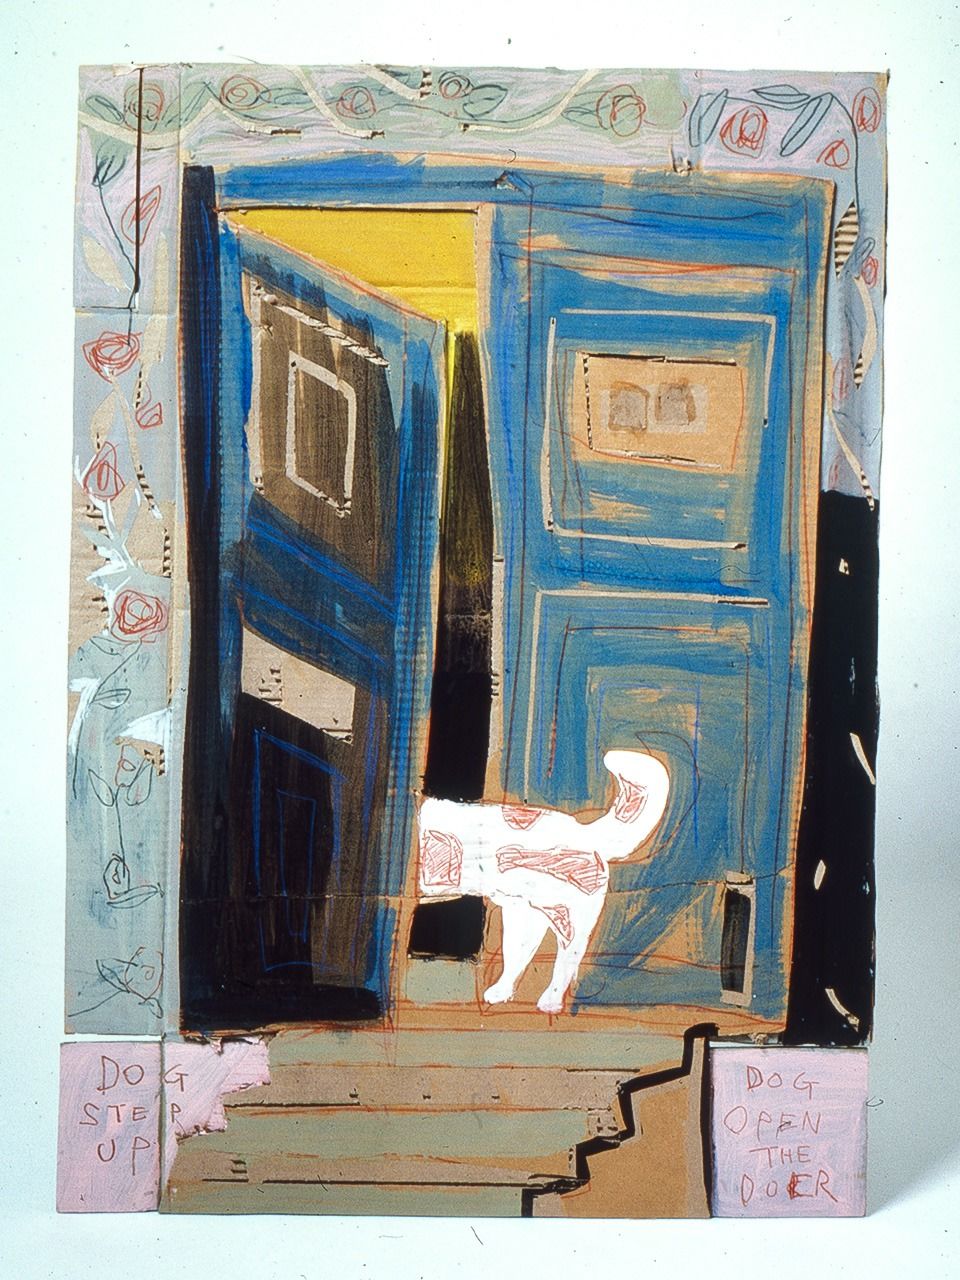 日比野さんがダンボールにアクリル絵の具で描いた作品「DOG OF THE DOOR」（1983/個人蔵）（写真提供：ヒビノスペシャル）